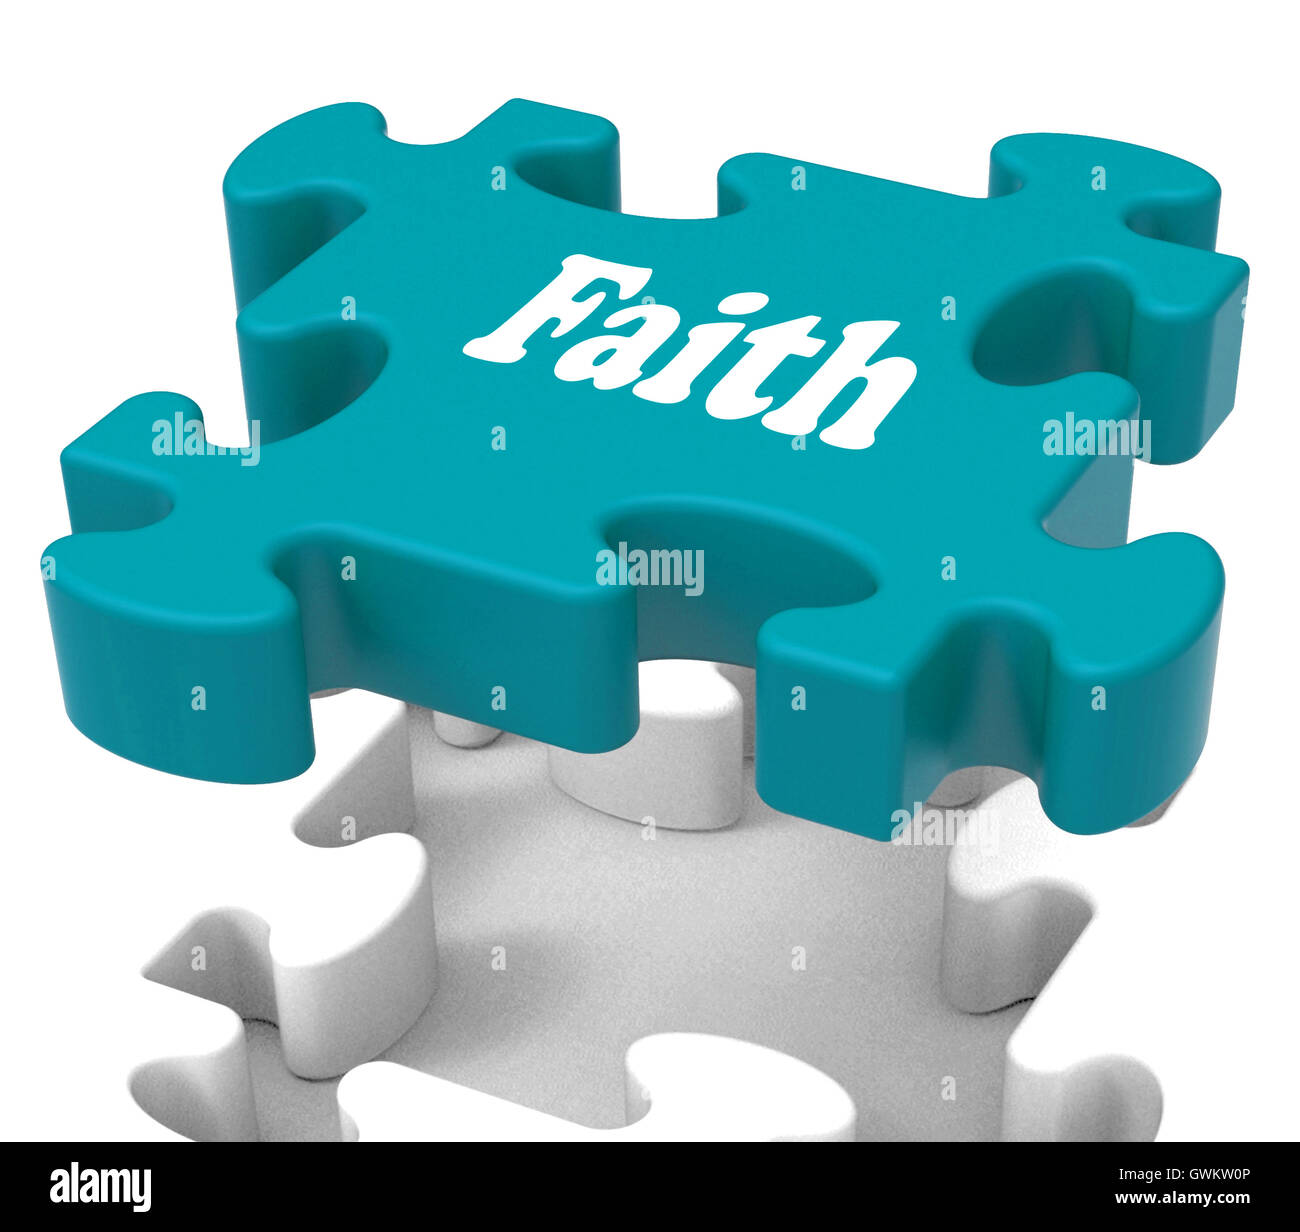 Puzzle foi croyant montre la croyance religieuse ou d'une fiducie Banque D'Images